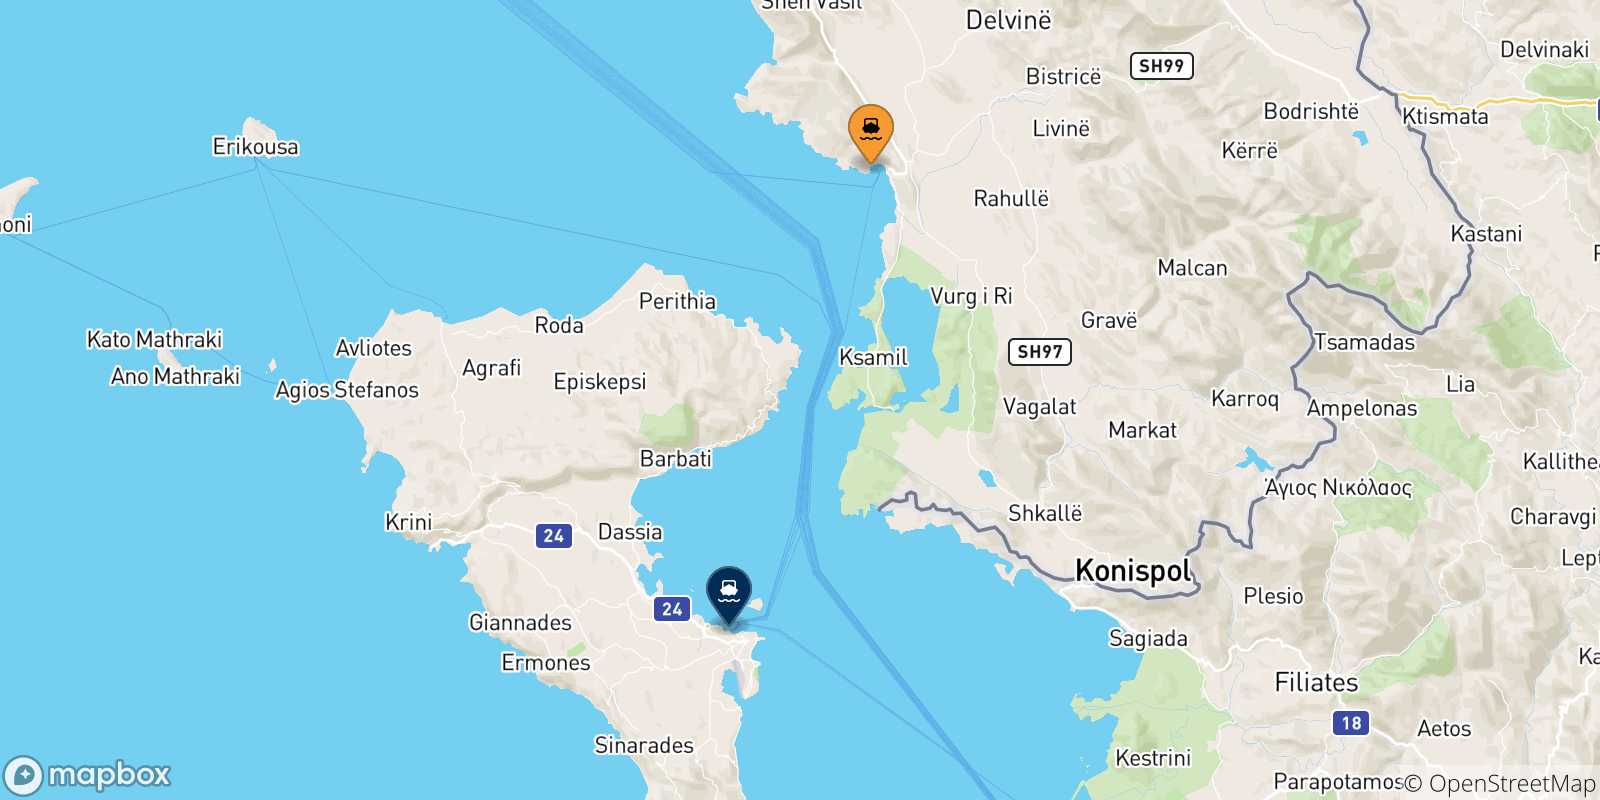 Mappa delle possibili rotte tra l'Albania e la Grecia